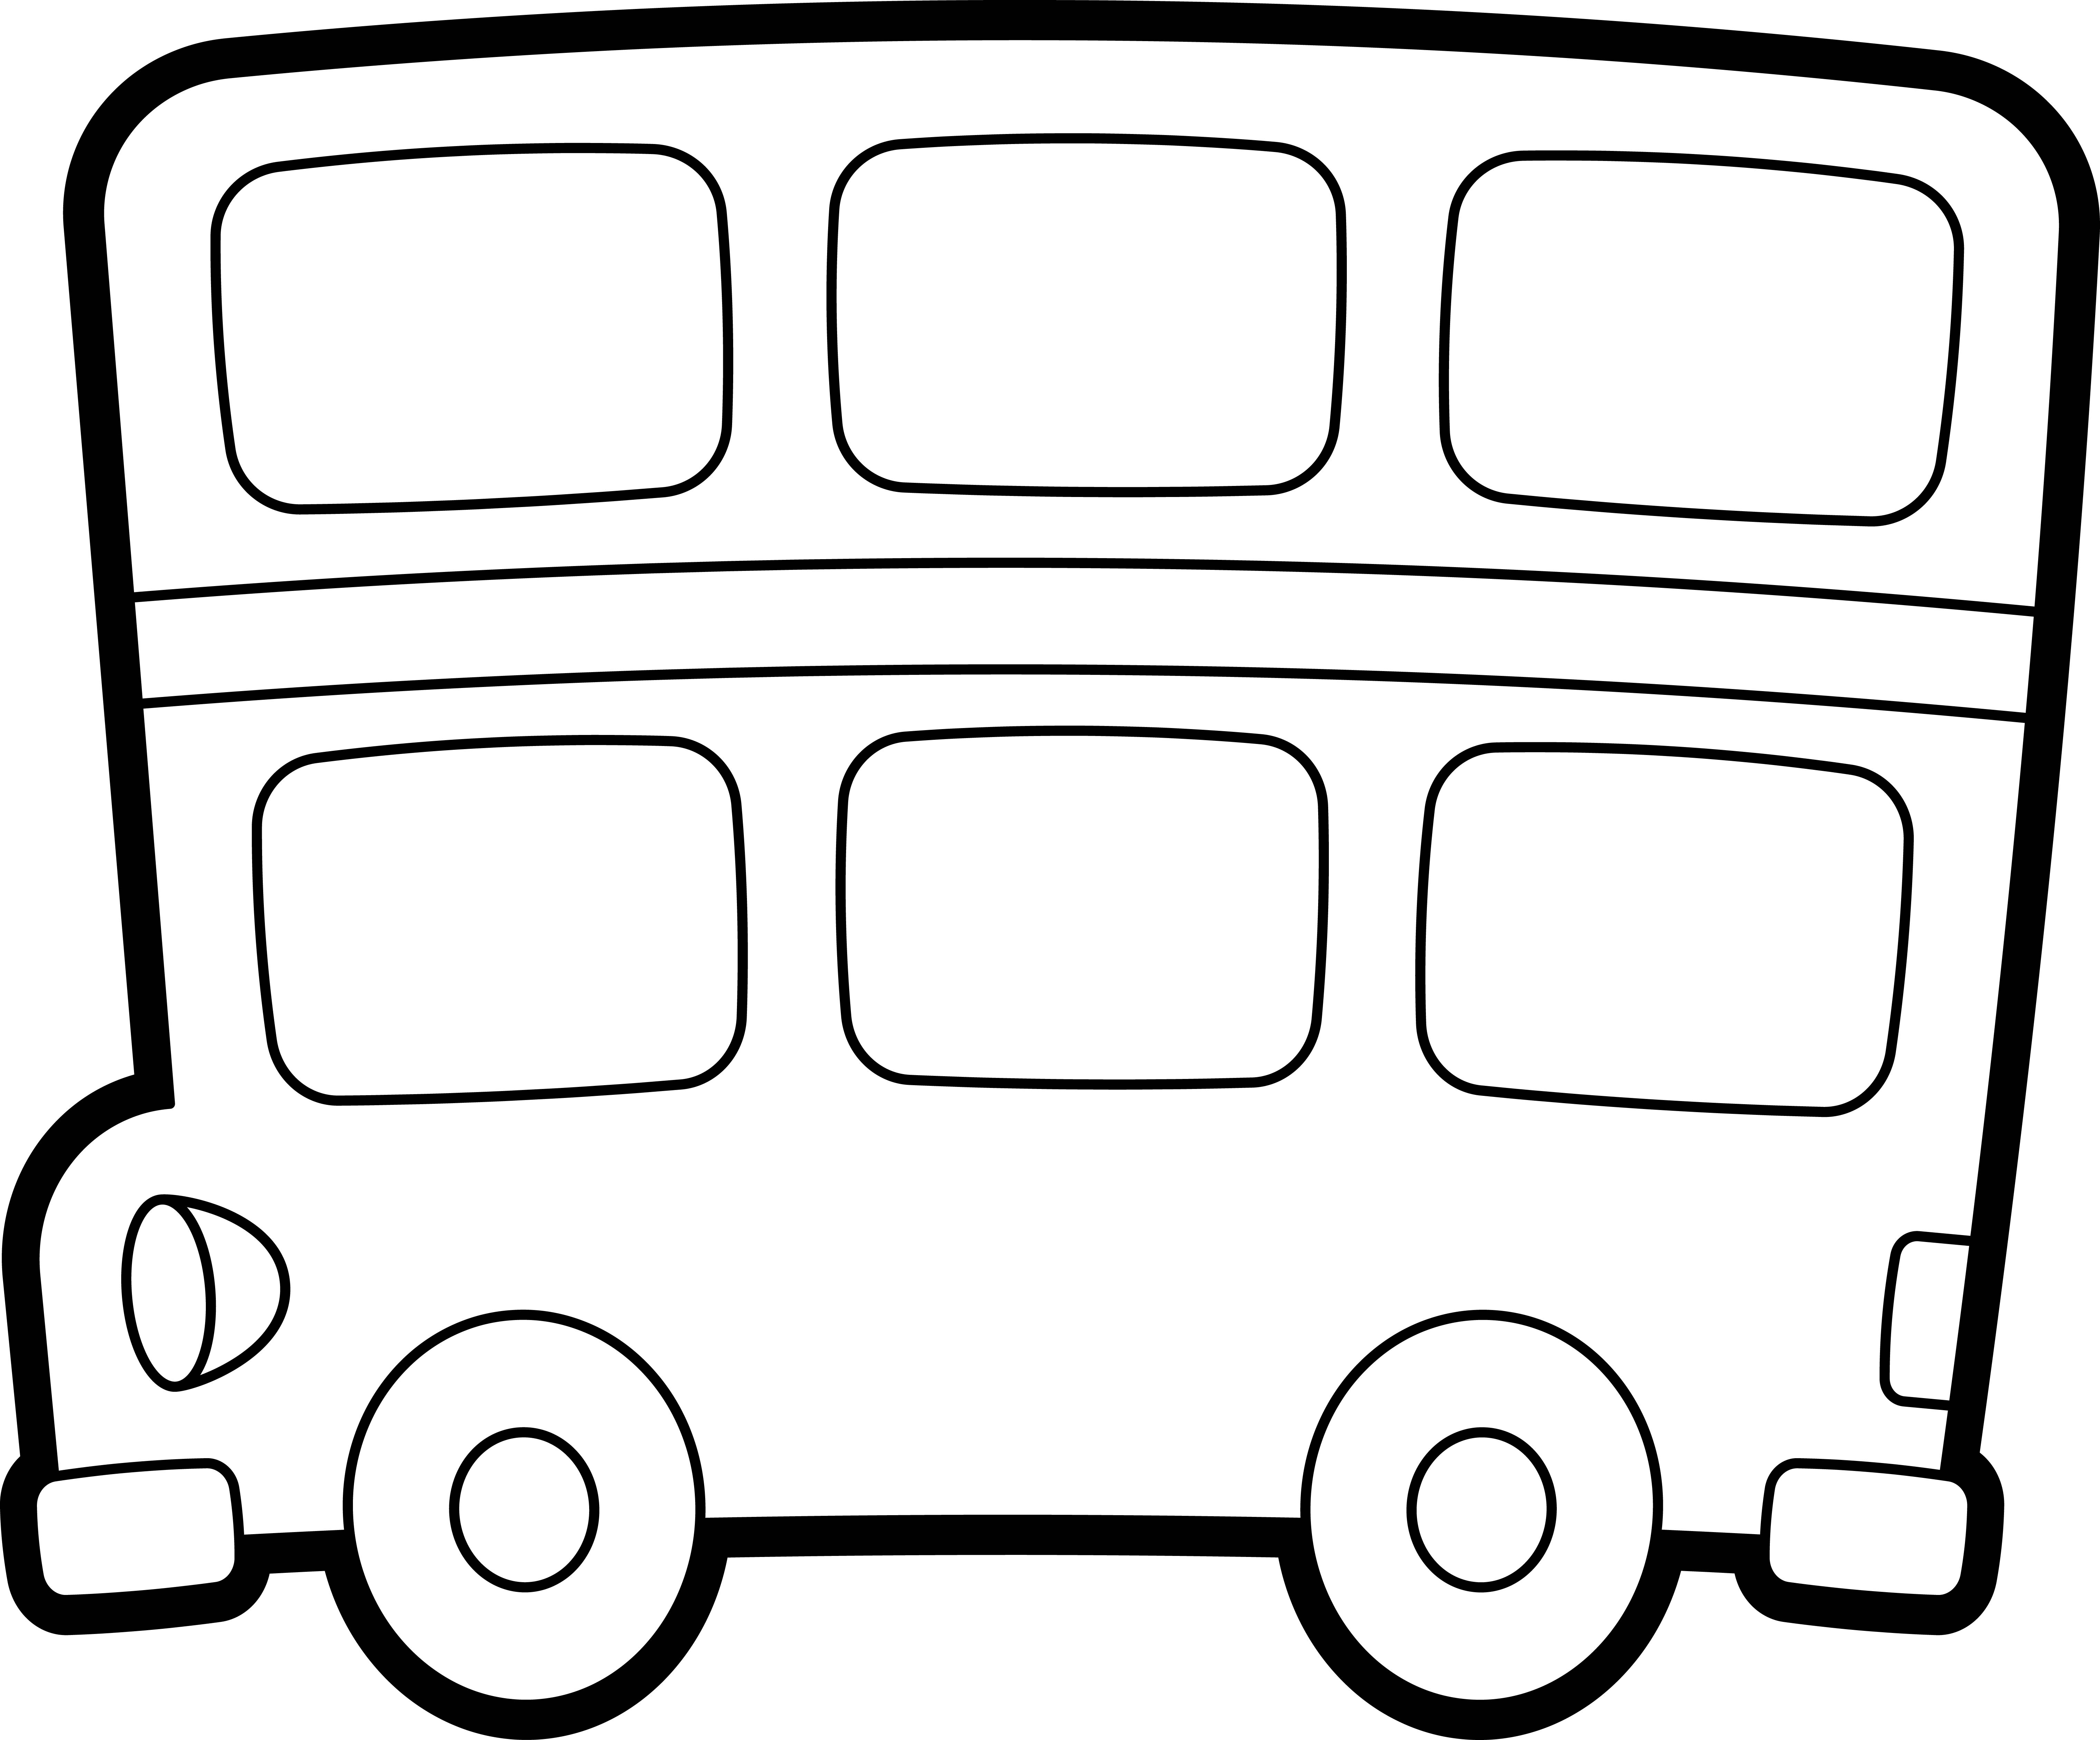 Раскраска мультяшный Лондонский автобус двухэтажный формата А4 в высоком качестве